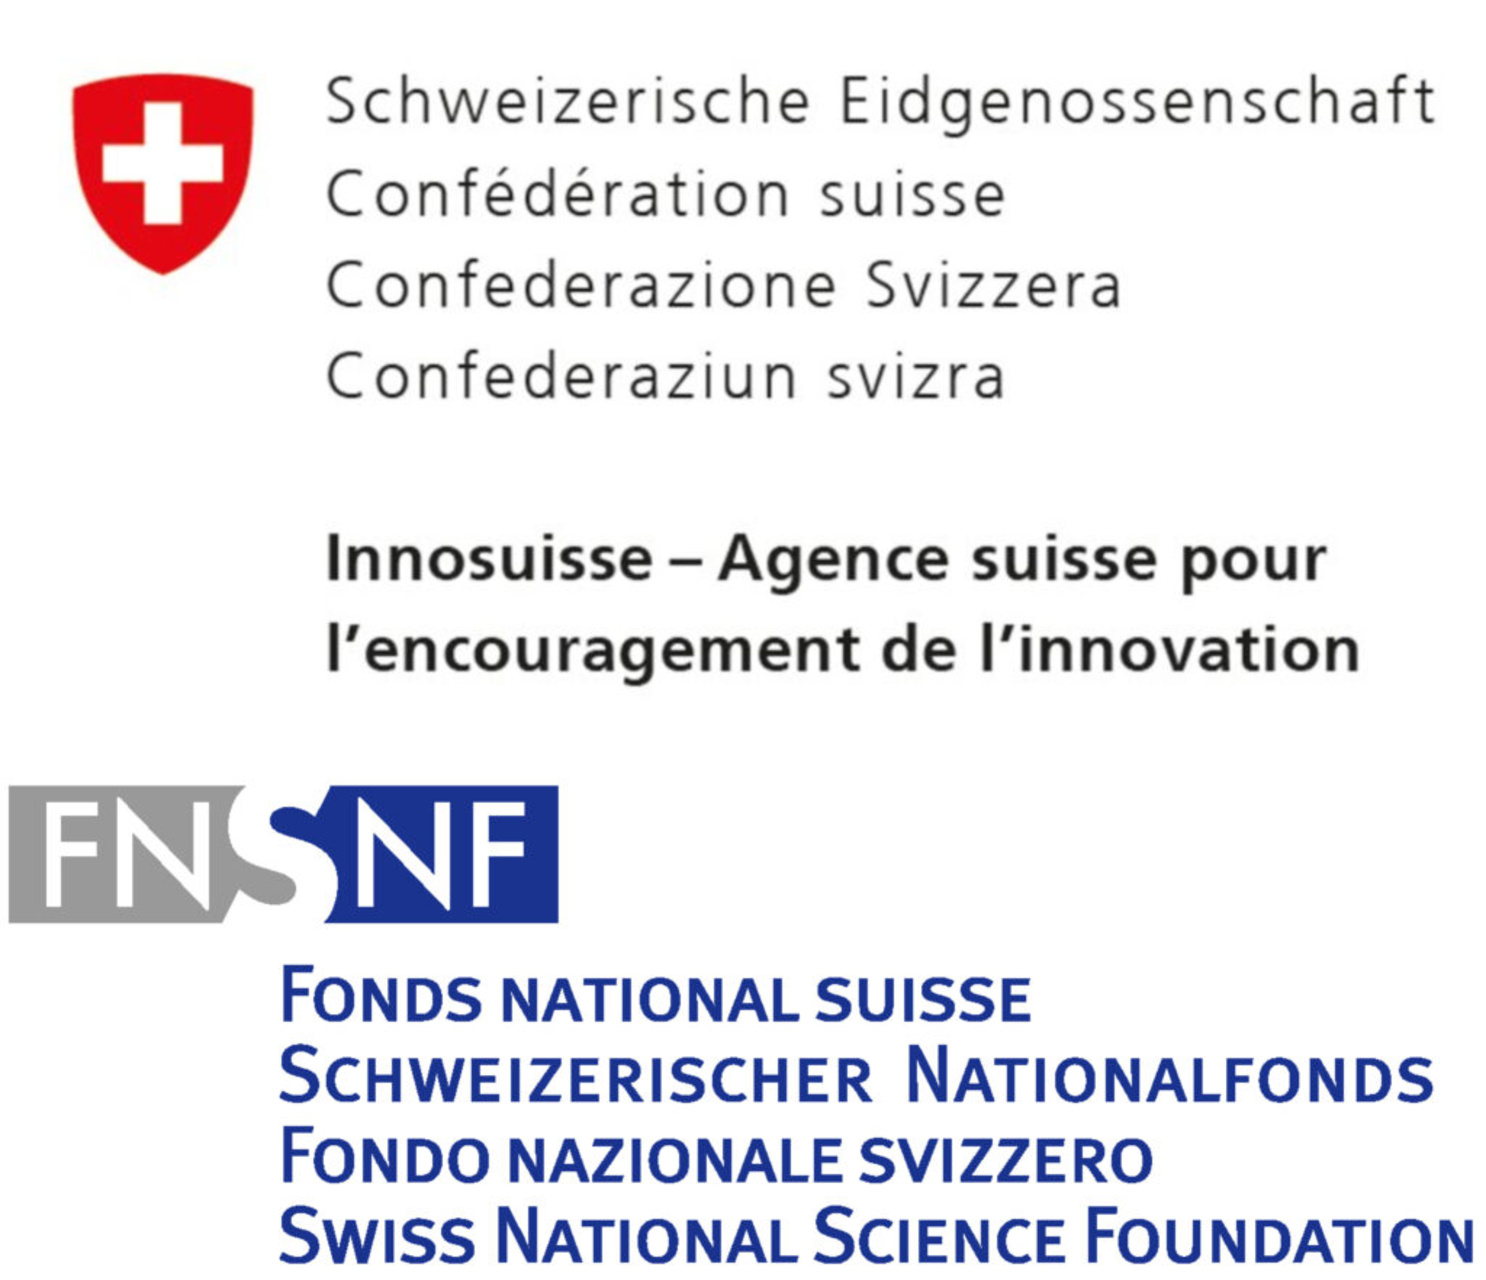 Utdanning, forskning og innovasjon: melding til parlamentet i Forbundsrådet for promotering av ERI-sektoren i fireårsperioden 2025–2028 og for ledelsen i Sveits